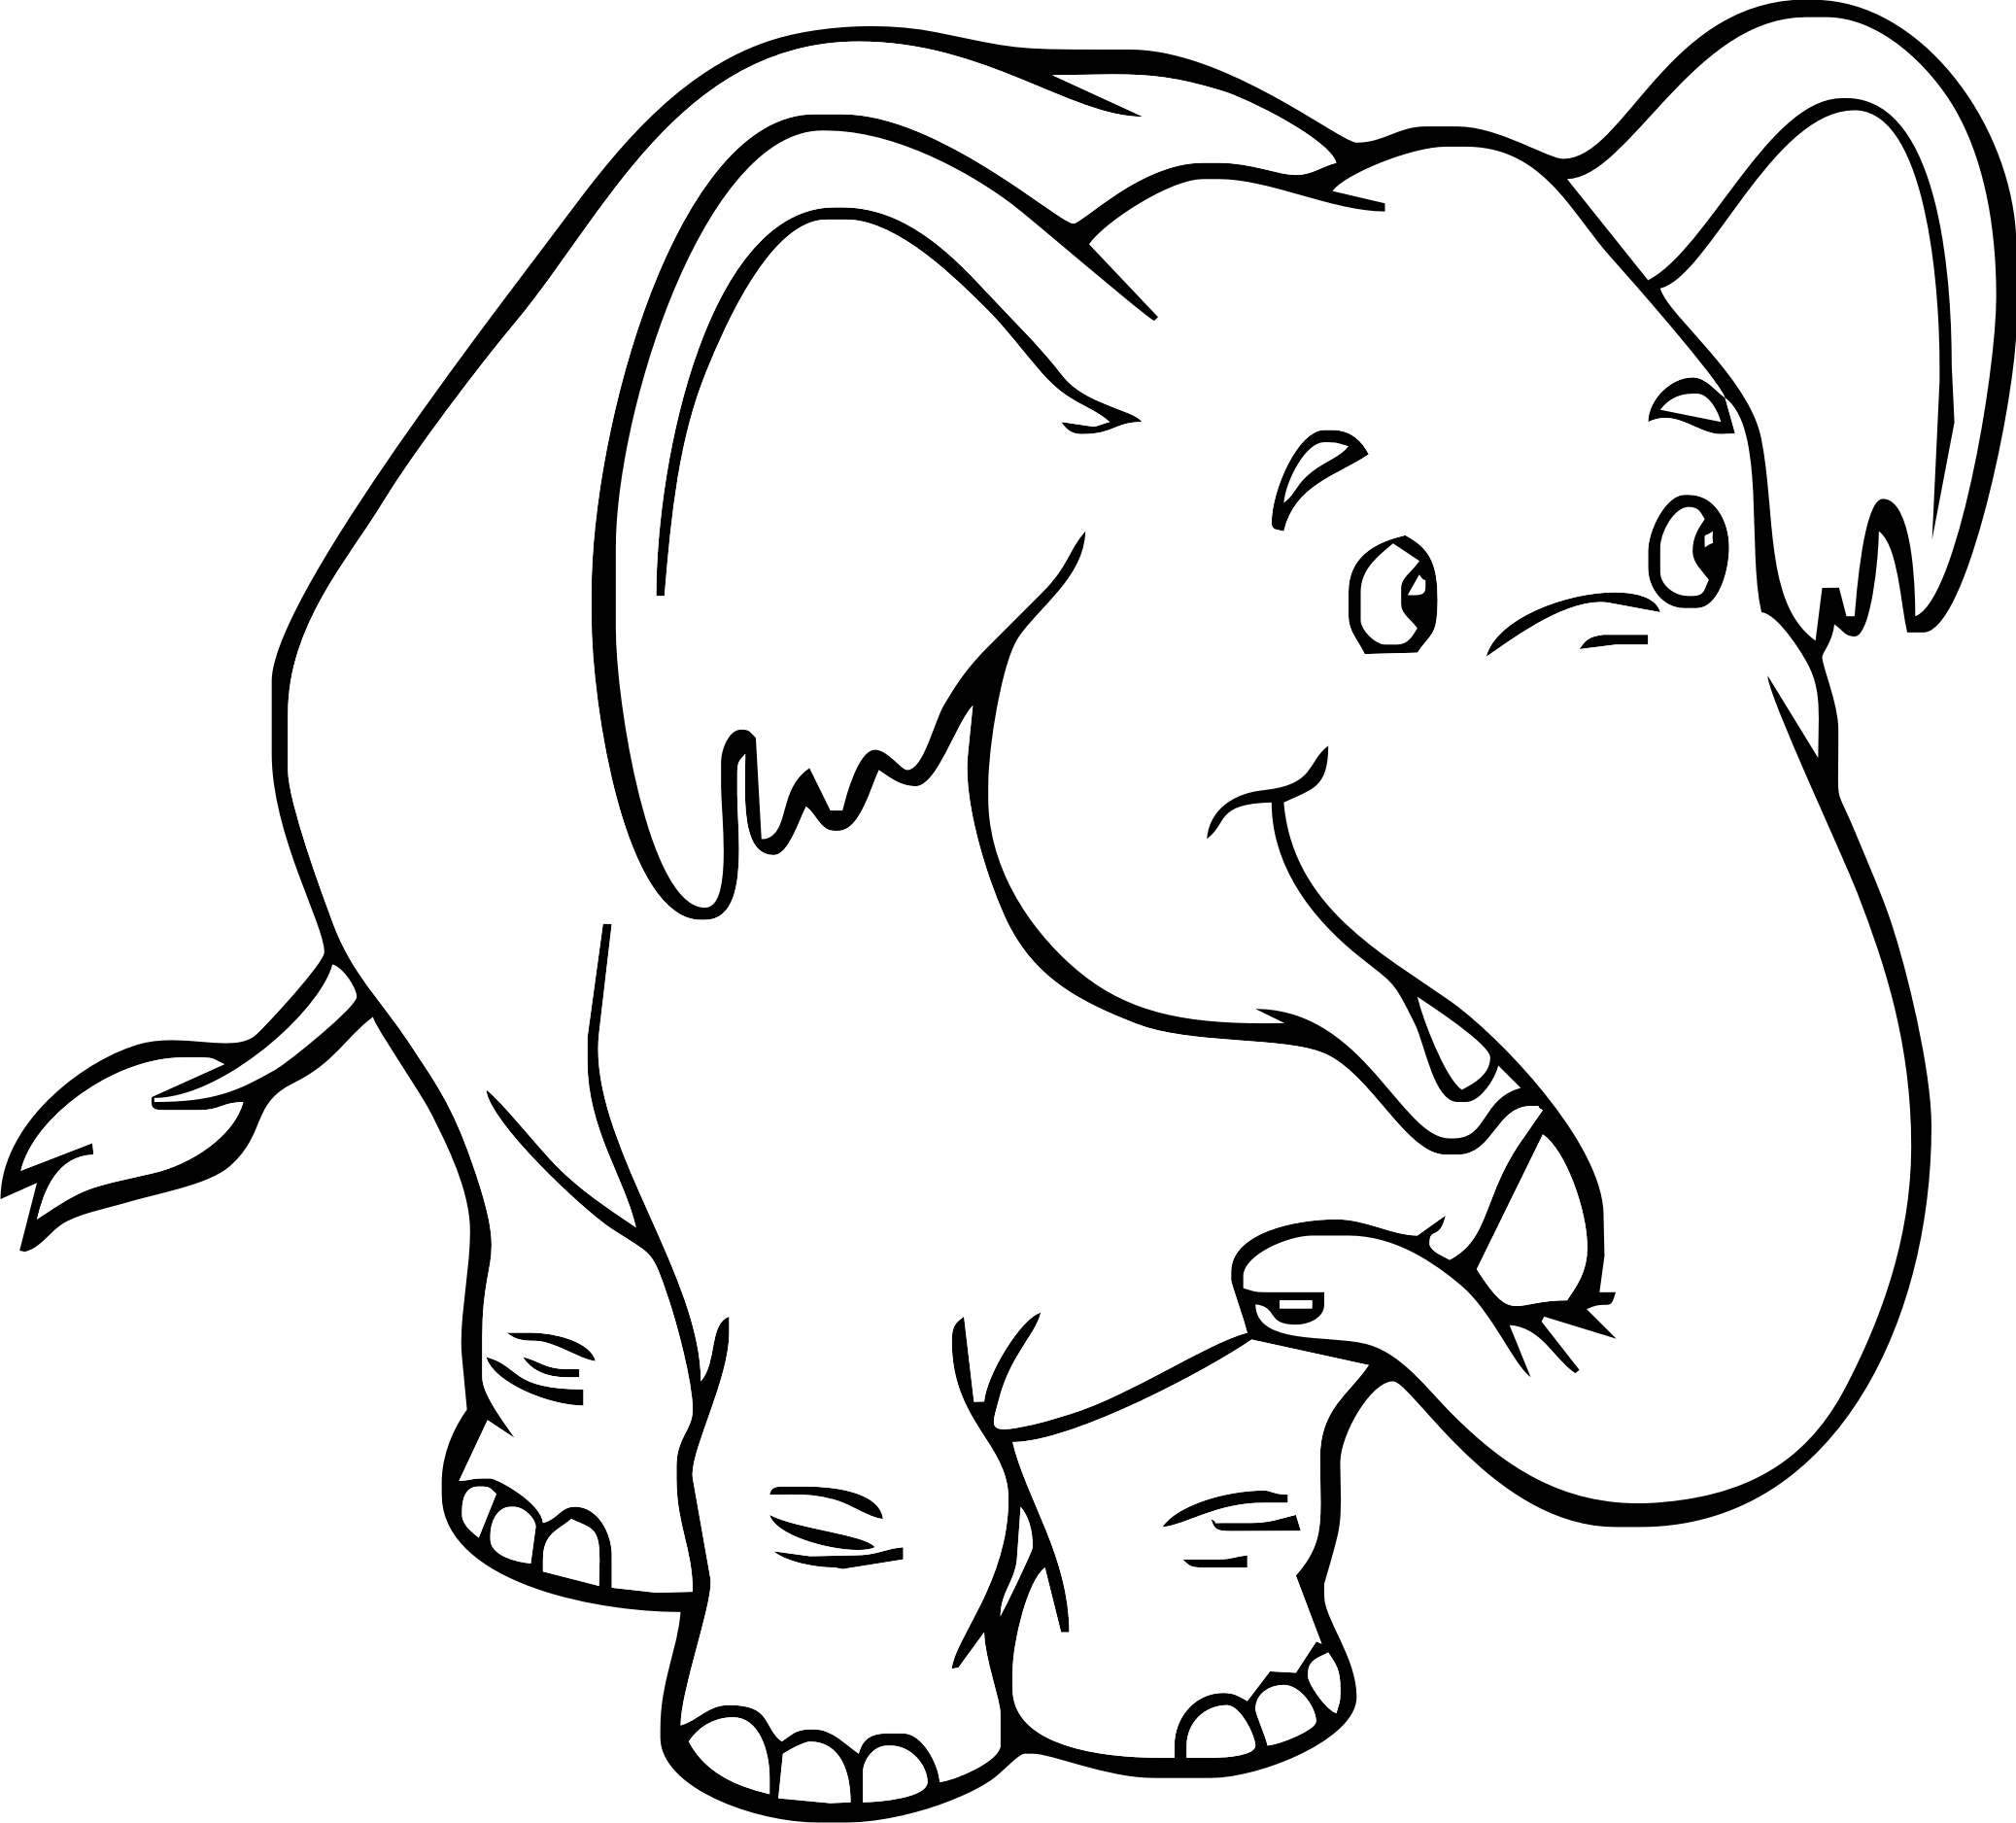 Simpatico elefante da colorare per bambini